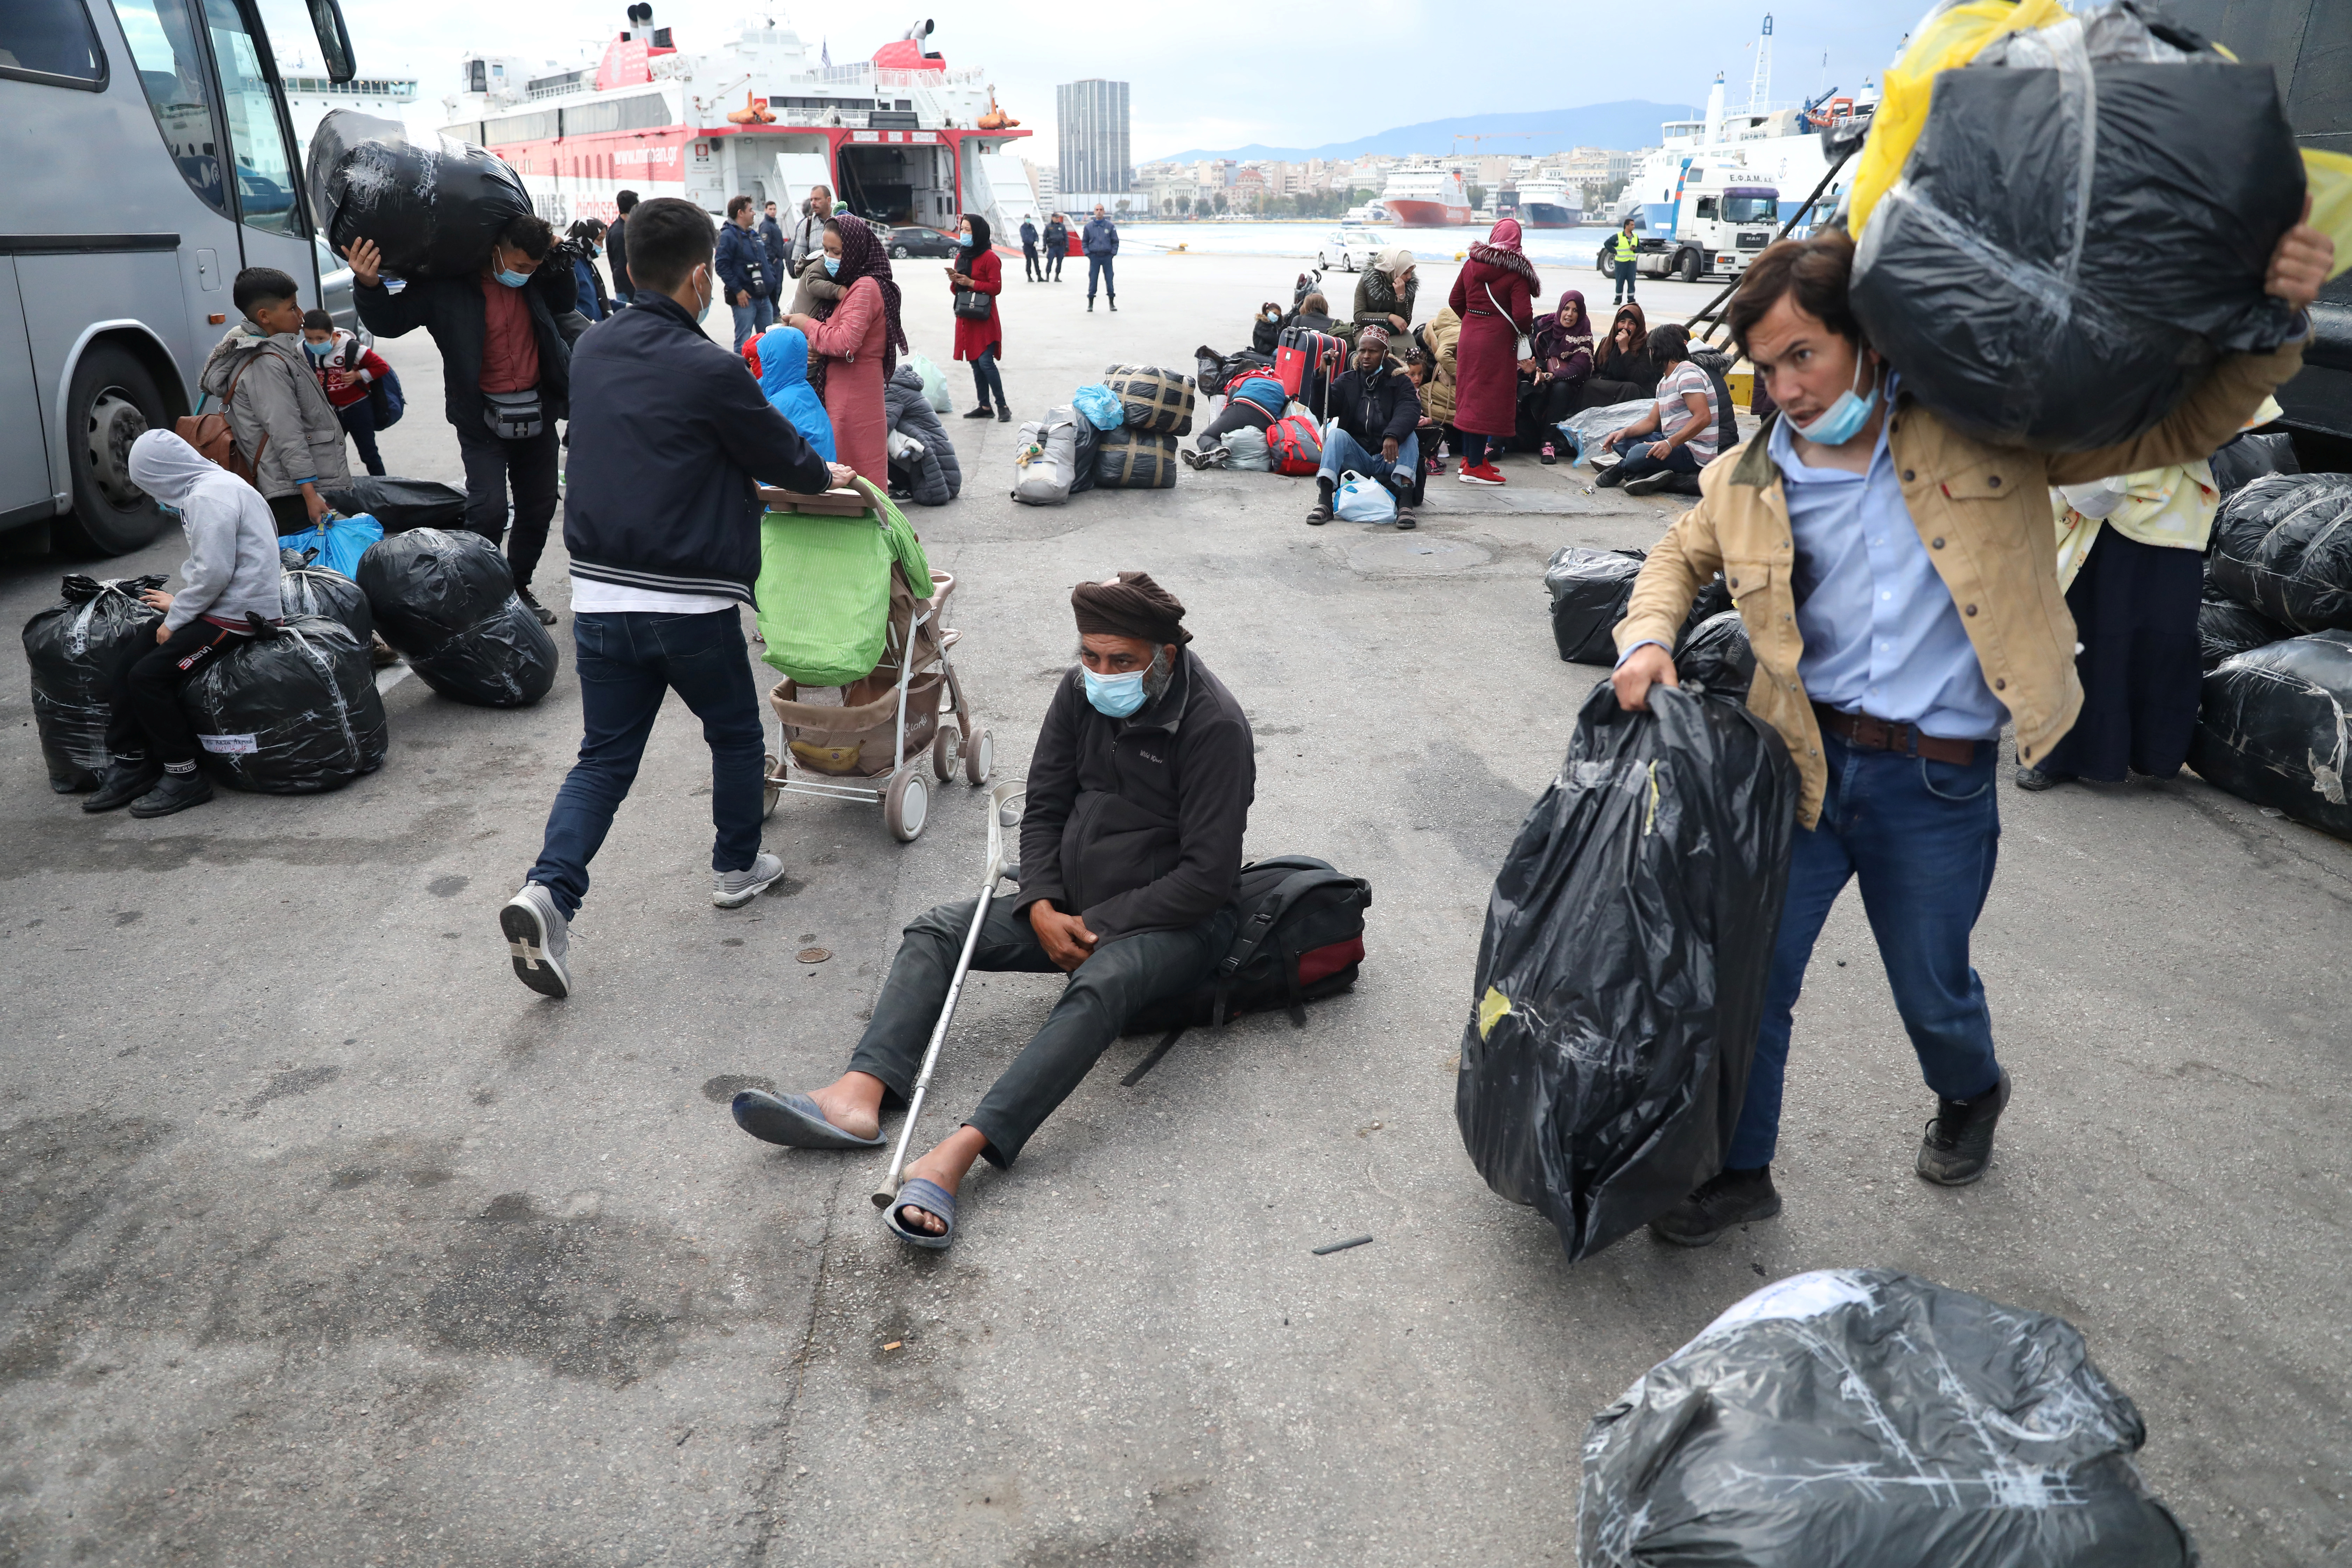 Acnur: Grecia debe respetar a refugiados y llevar a vulnerables a hoteles